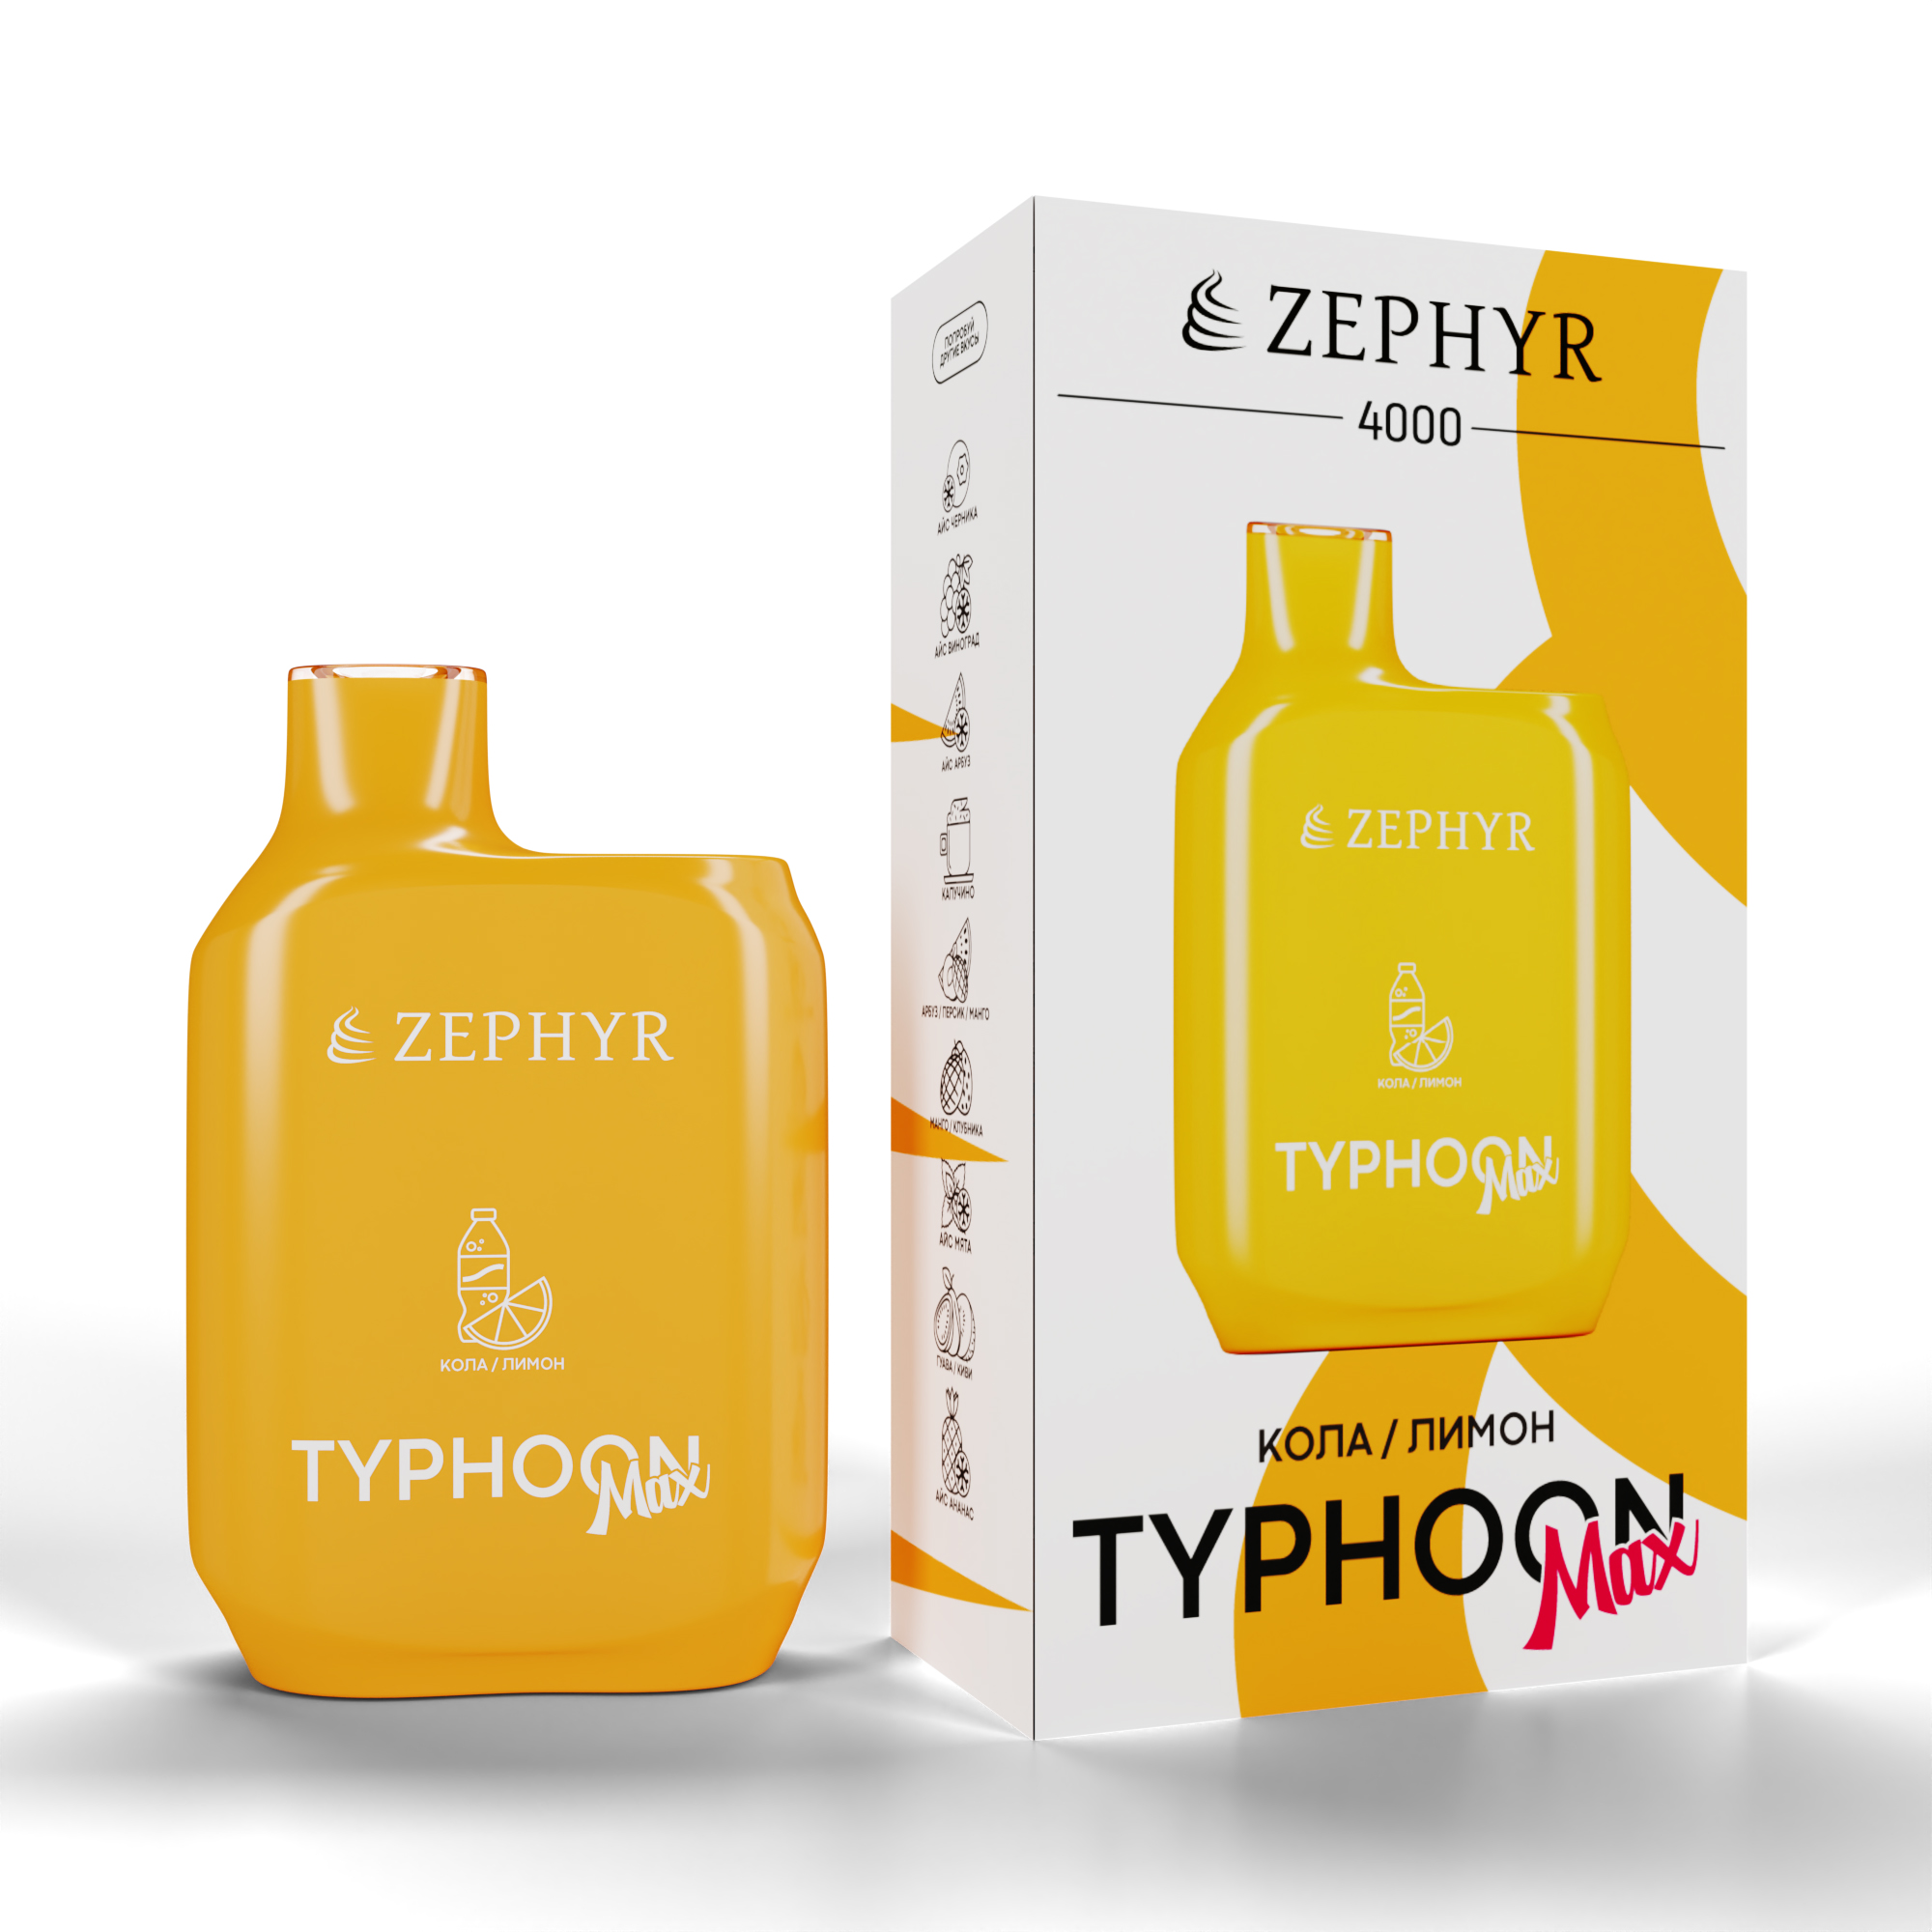 Одноразовая ЭС ZEPHYR Typhoon 4000, Lemon coke, 19 мг/см3, 12 мл (М)